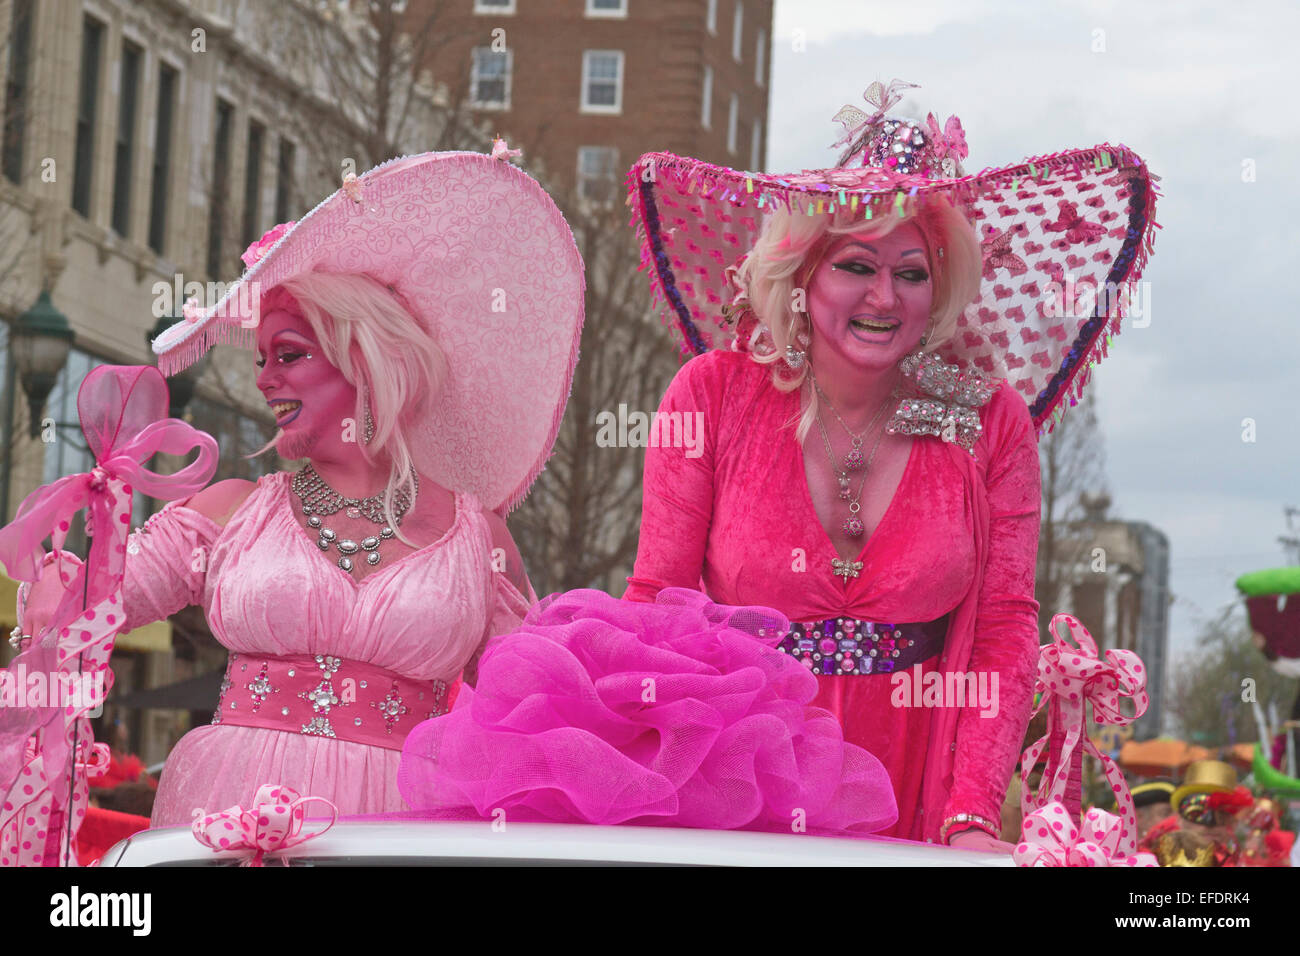 Zwei Rüschen kostümierte Damen alles in Rosa mit rosa Haut, mit einem Bart, Reiten und wave, um Menschen während der Karneval-parade Stockfoto